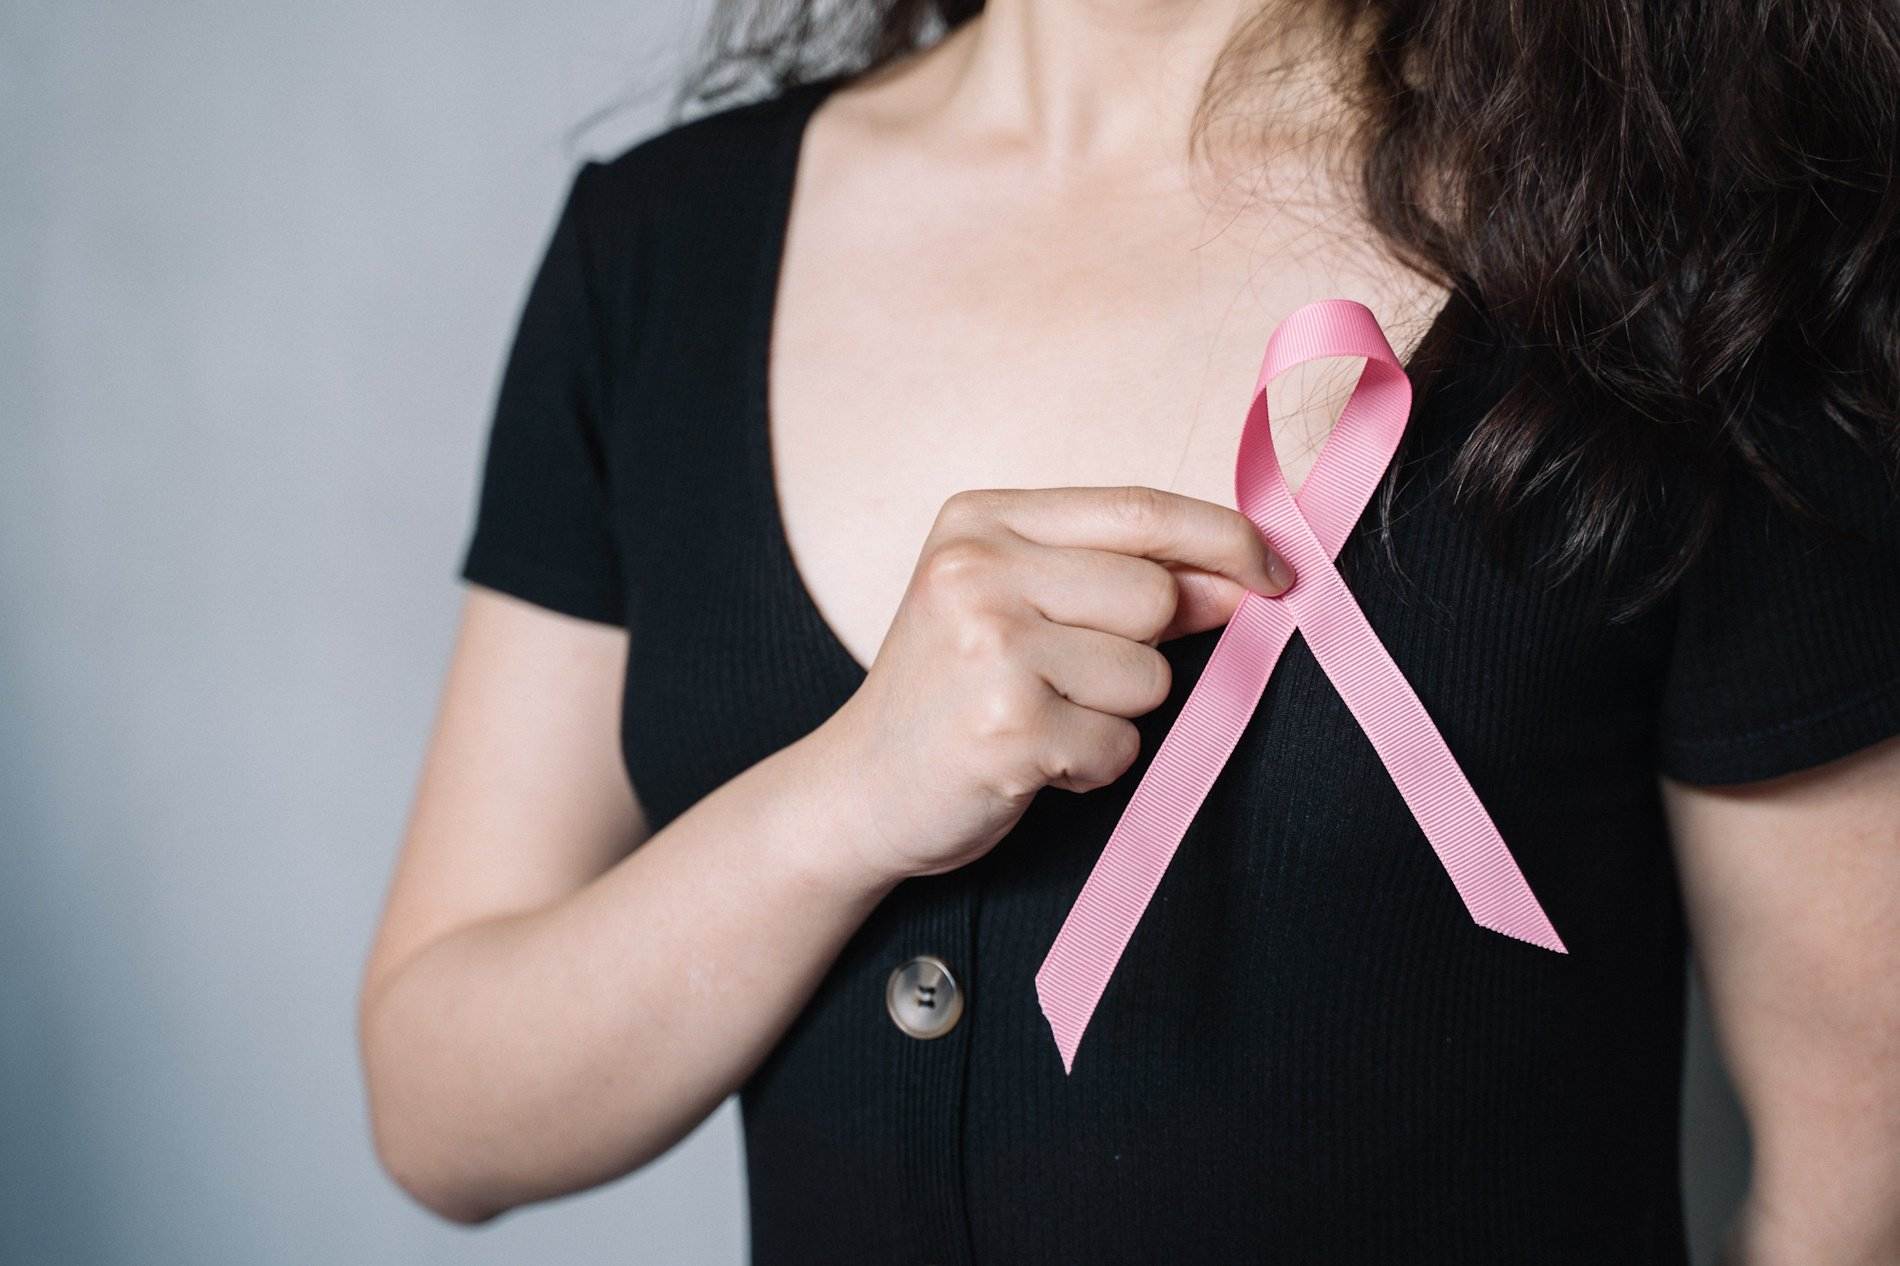 Novartis publica unas guías para mejorar el bienestar físico y mental de las personas con cáncer de mama